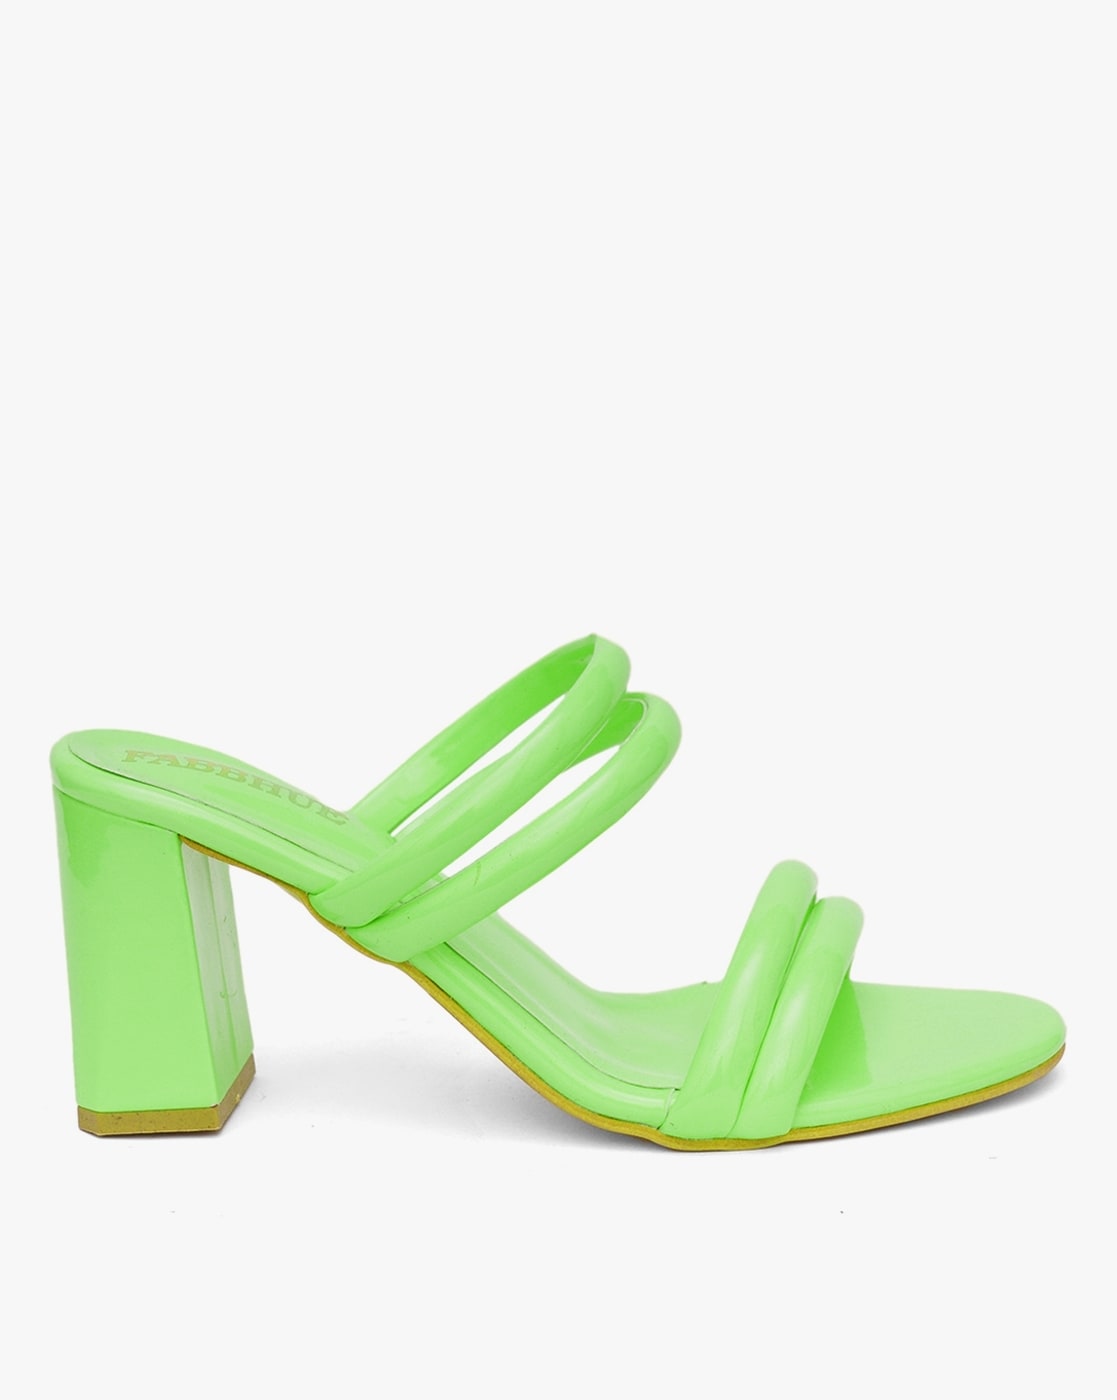 ALDO Classic heels - bright green/green - Zalando.de